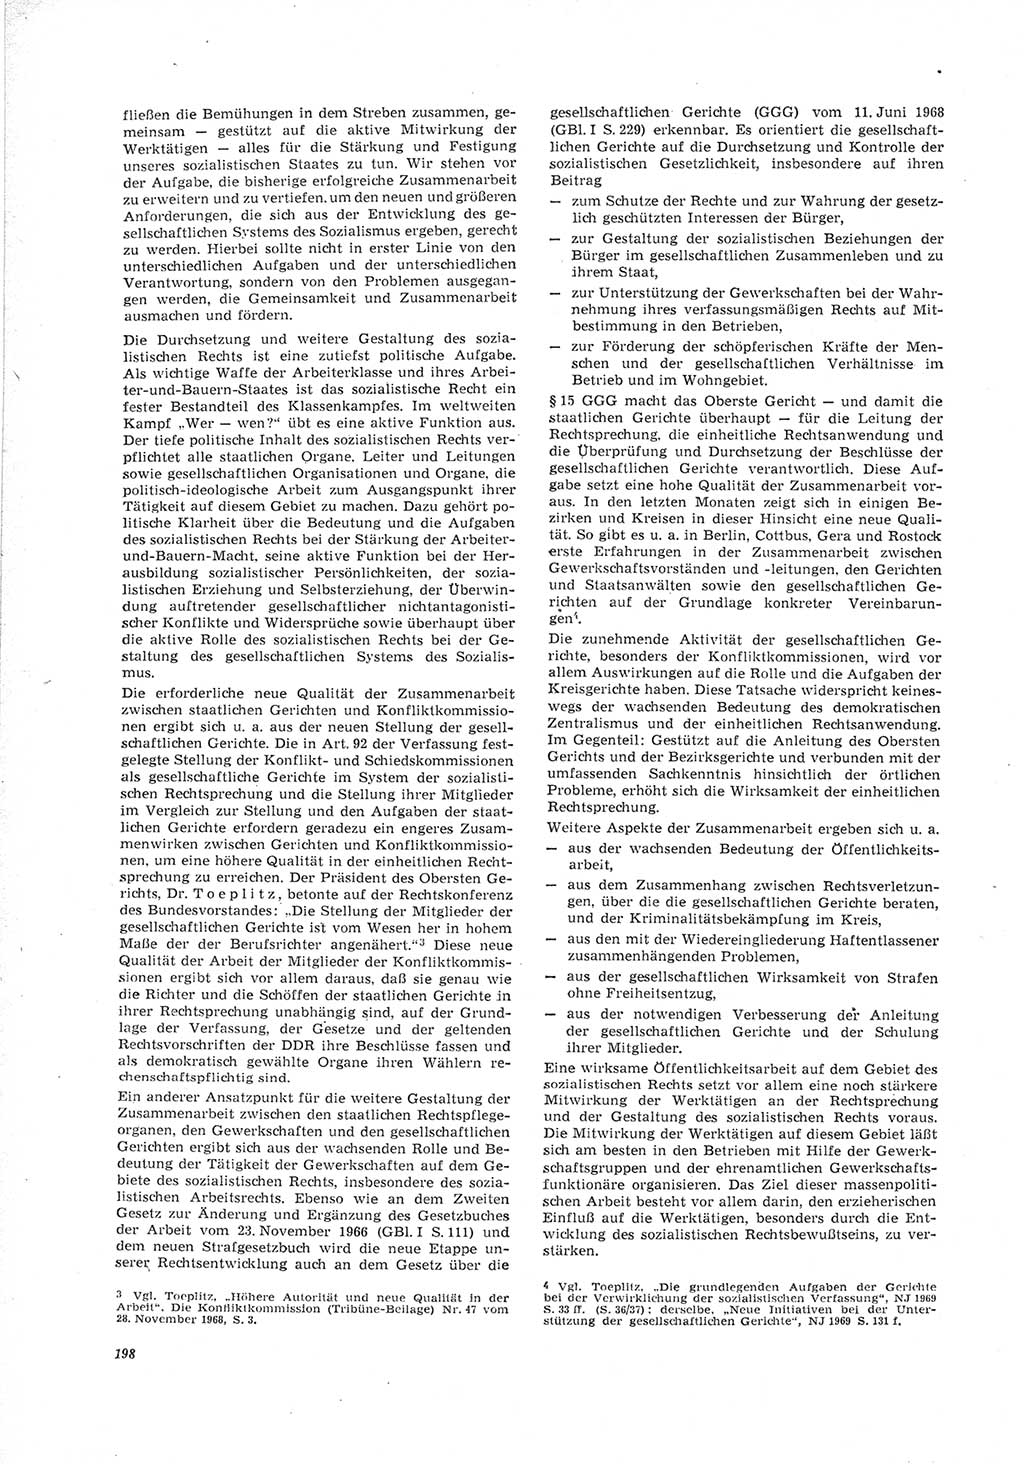 Neue Justiz (NJ), Zeitschrift für Recht und Rechtswissenschaft [Deutsche Demokratische Republik (DDR)], 23. Jahrgang 1969, Seite 198 (NJ DDR 1969, S. 198)